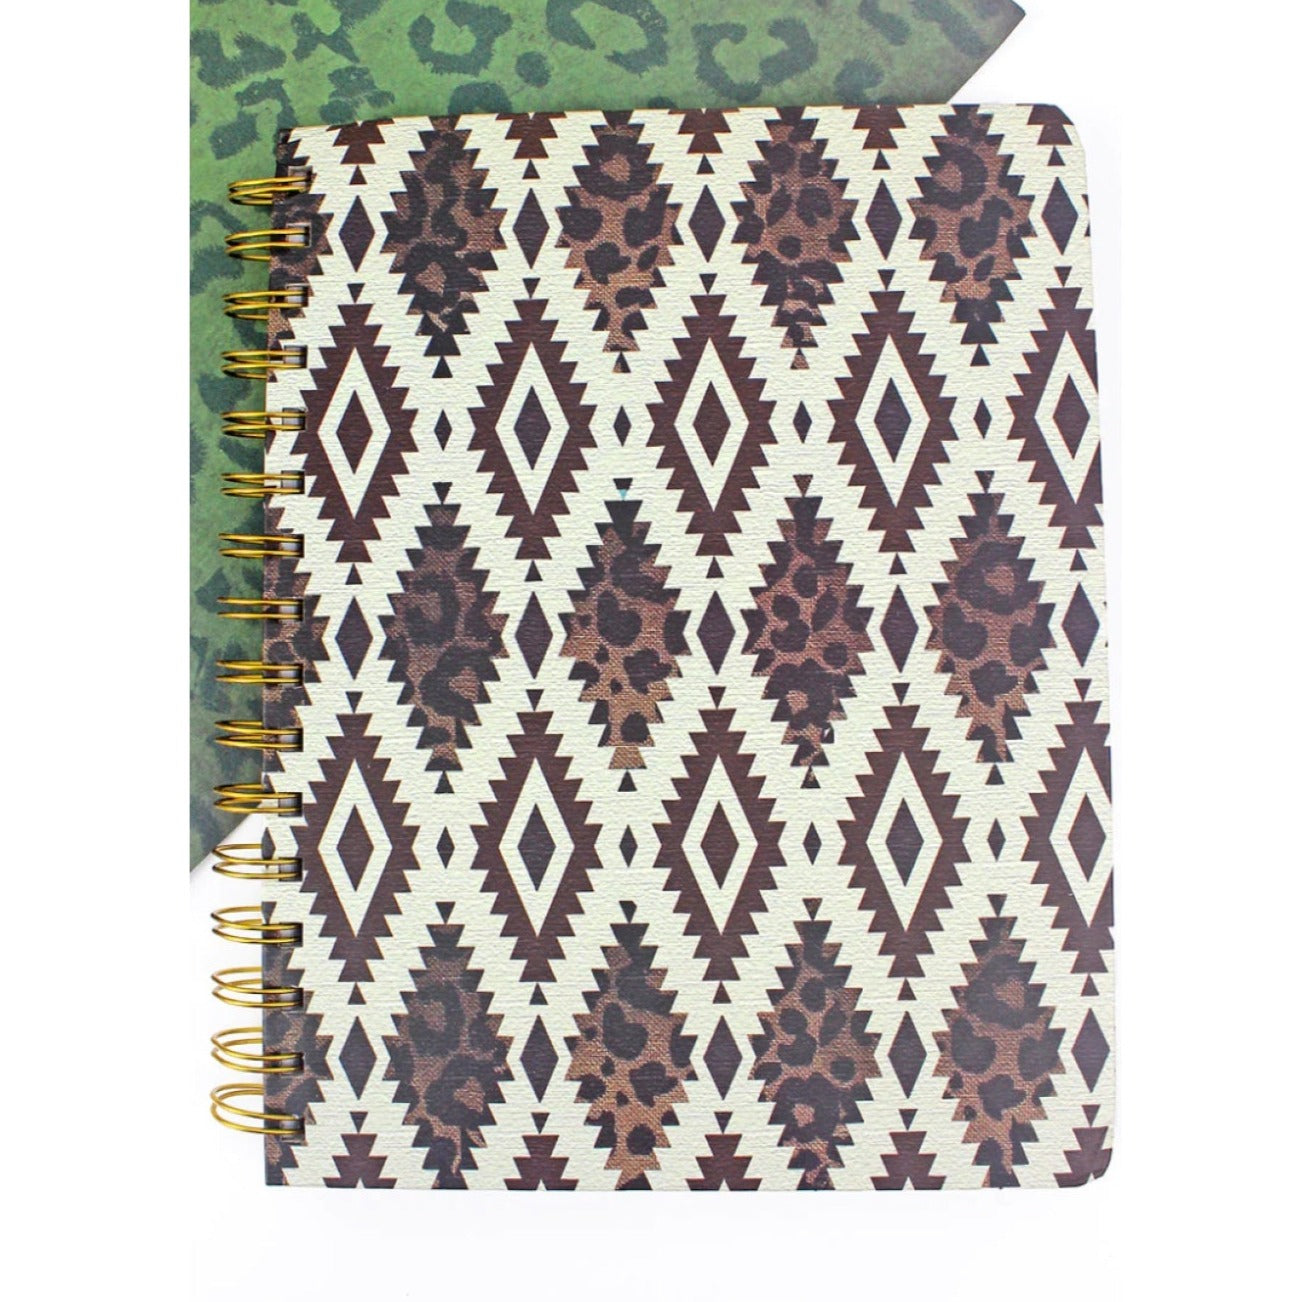 Wirebound Hardcover Notebook/Journal - Wild Diamond